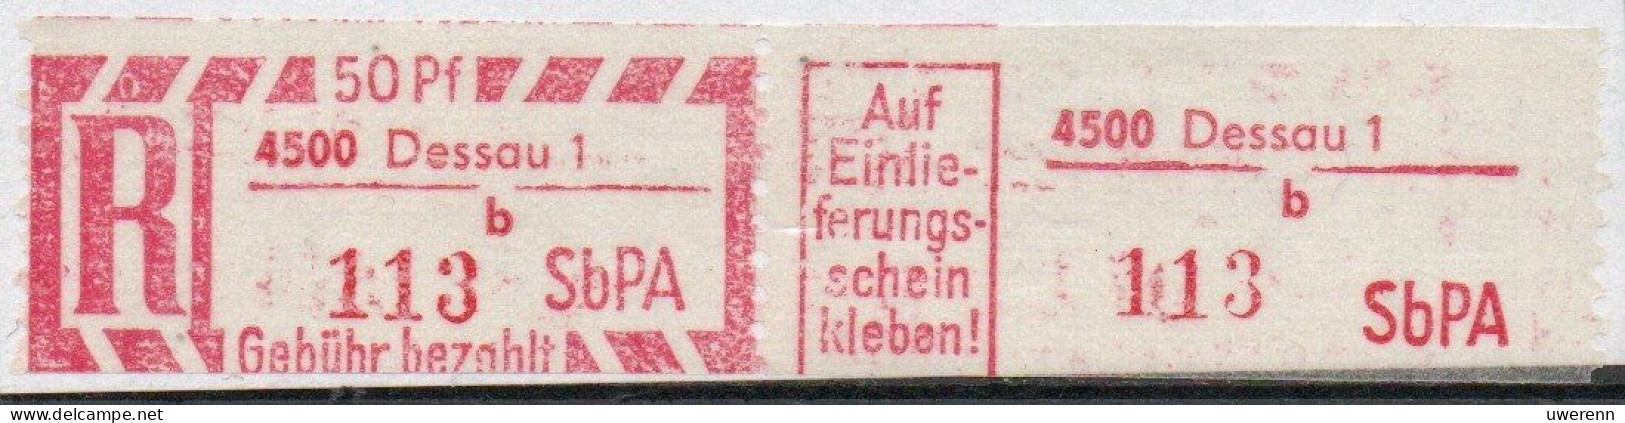 DDR Einschreibemarke Dessau SbPA Postfrisch, EM2F-4500-1b(4) RU (b) Zh - Labels For Registered Mail